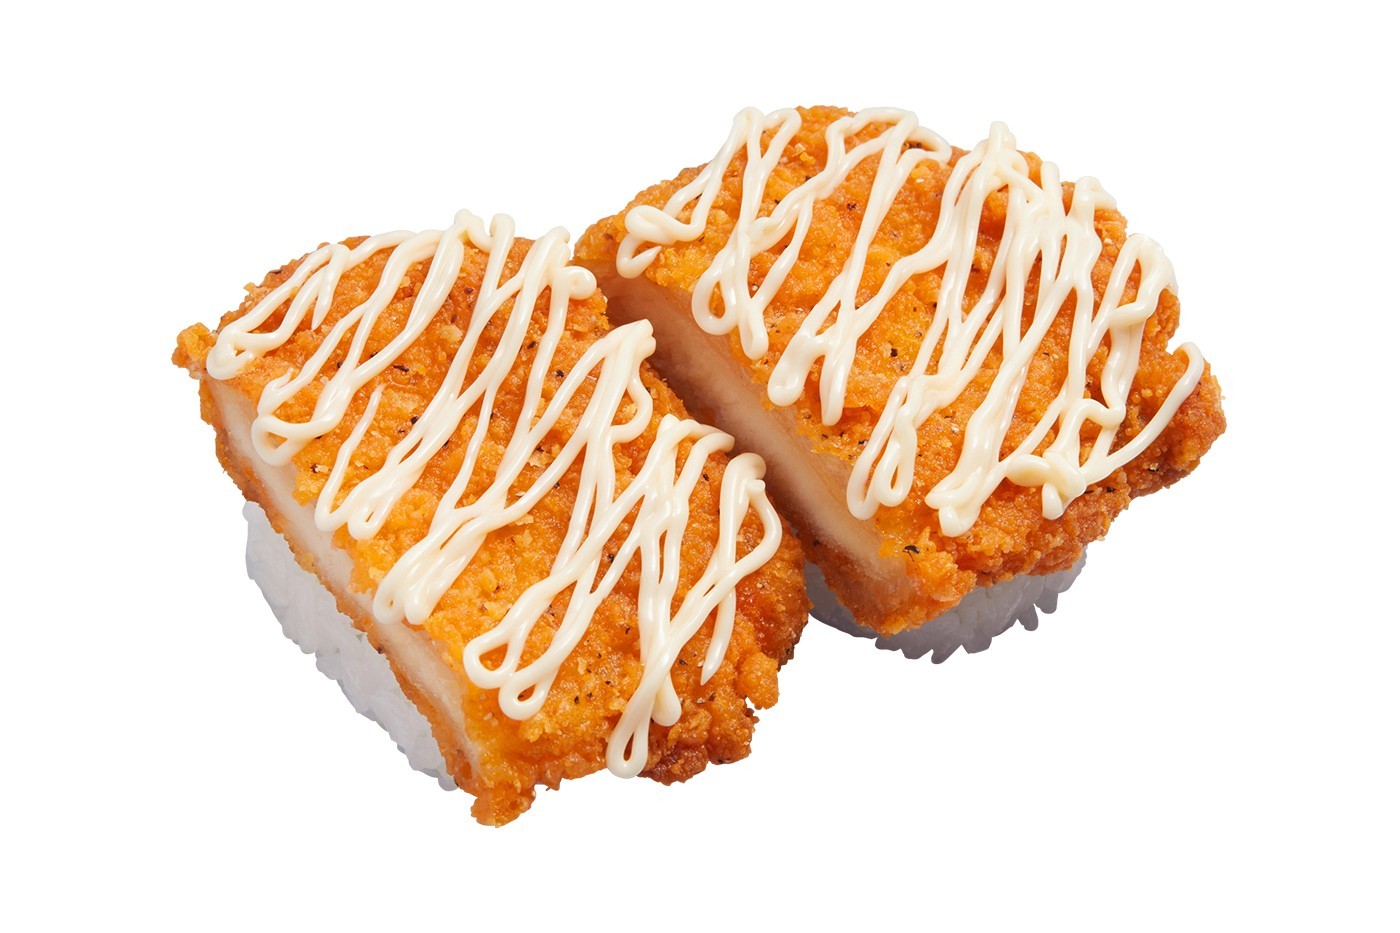 日本连锁回转寿司 Kappa Sushi 推出全新「炸鸡」握寿司